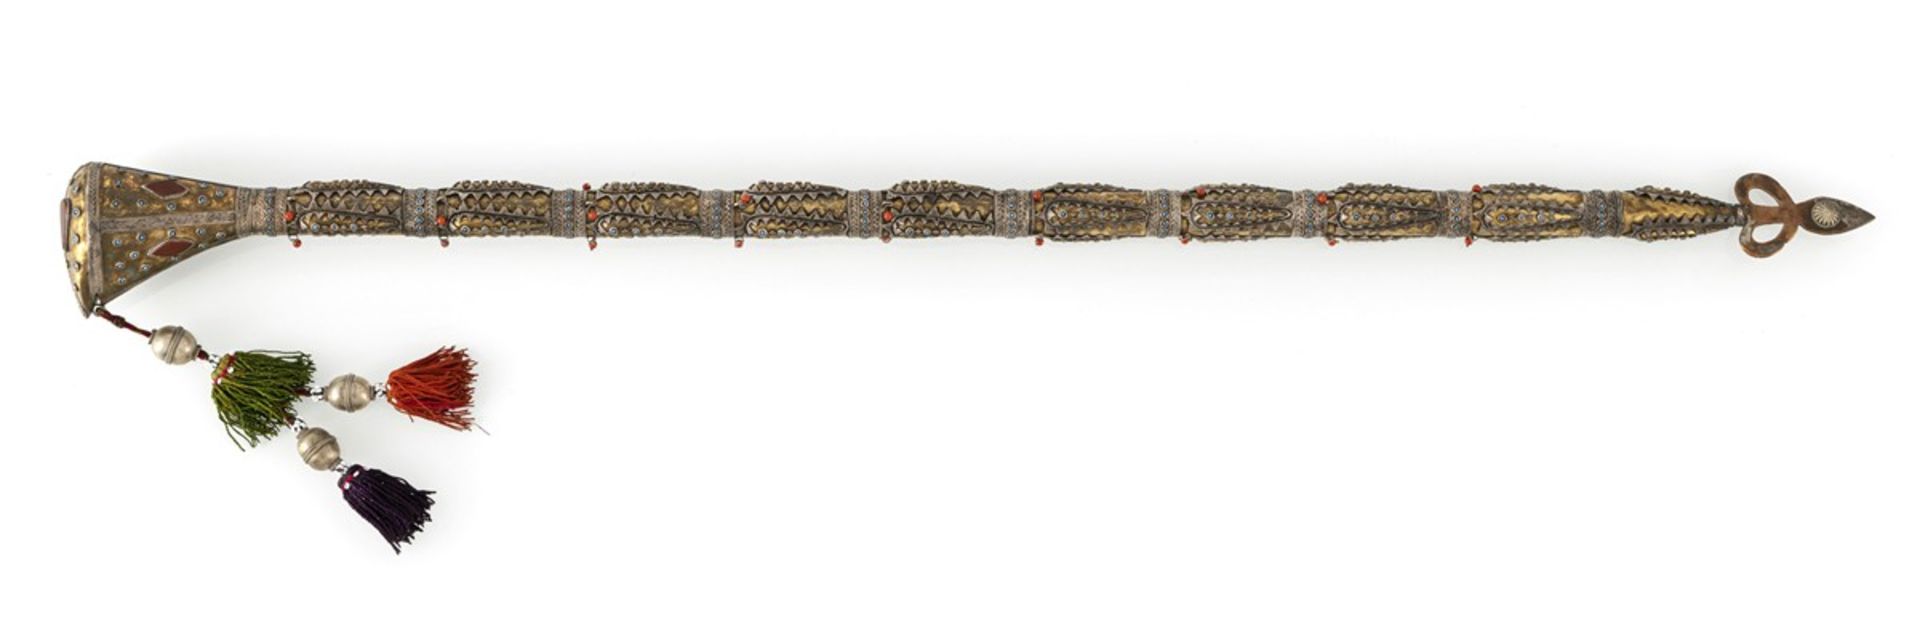 Stock im Kazak-Stil mit Knauf und Kupfer-Spitze, Silber vergoldet